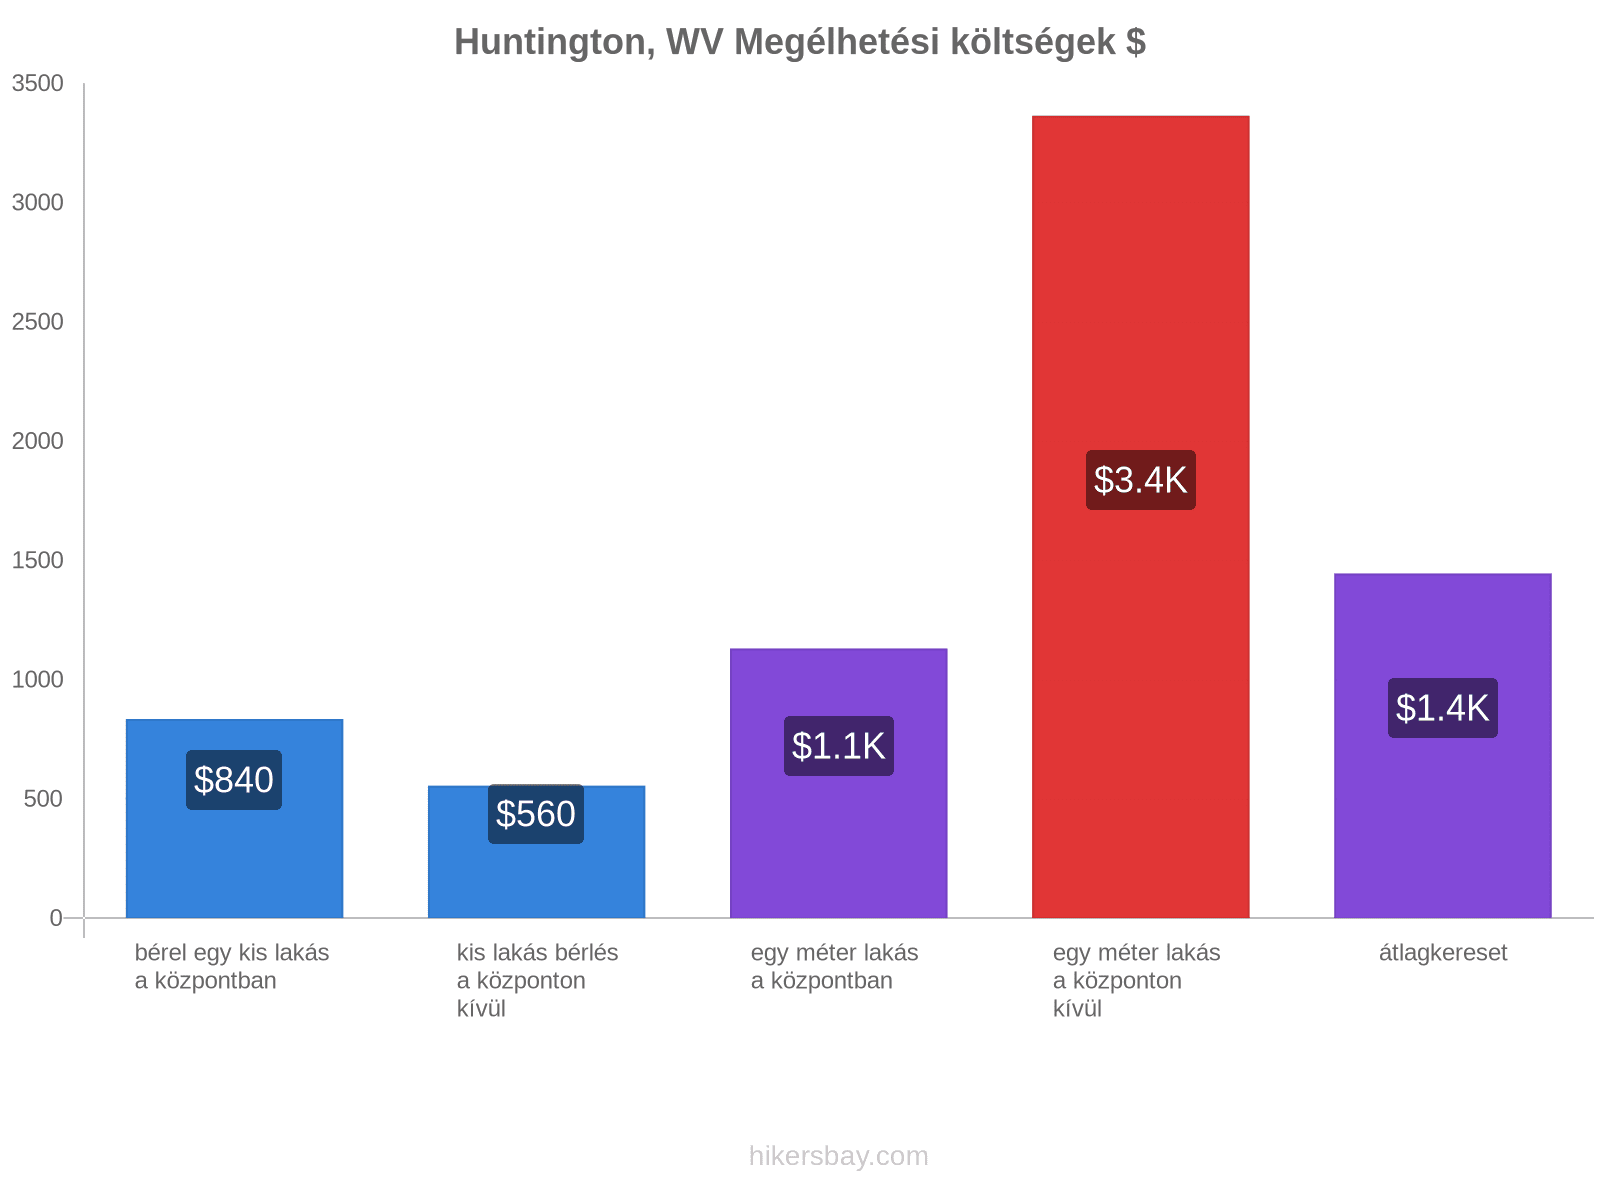 Huntington, WV megélhetési költségek hikersbay.com